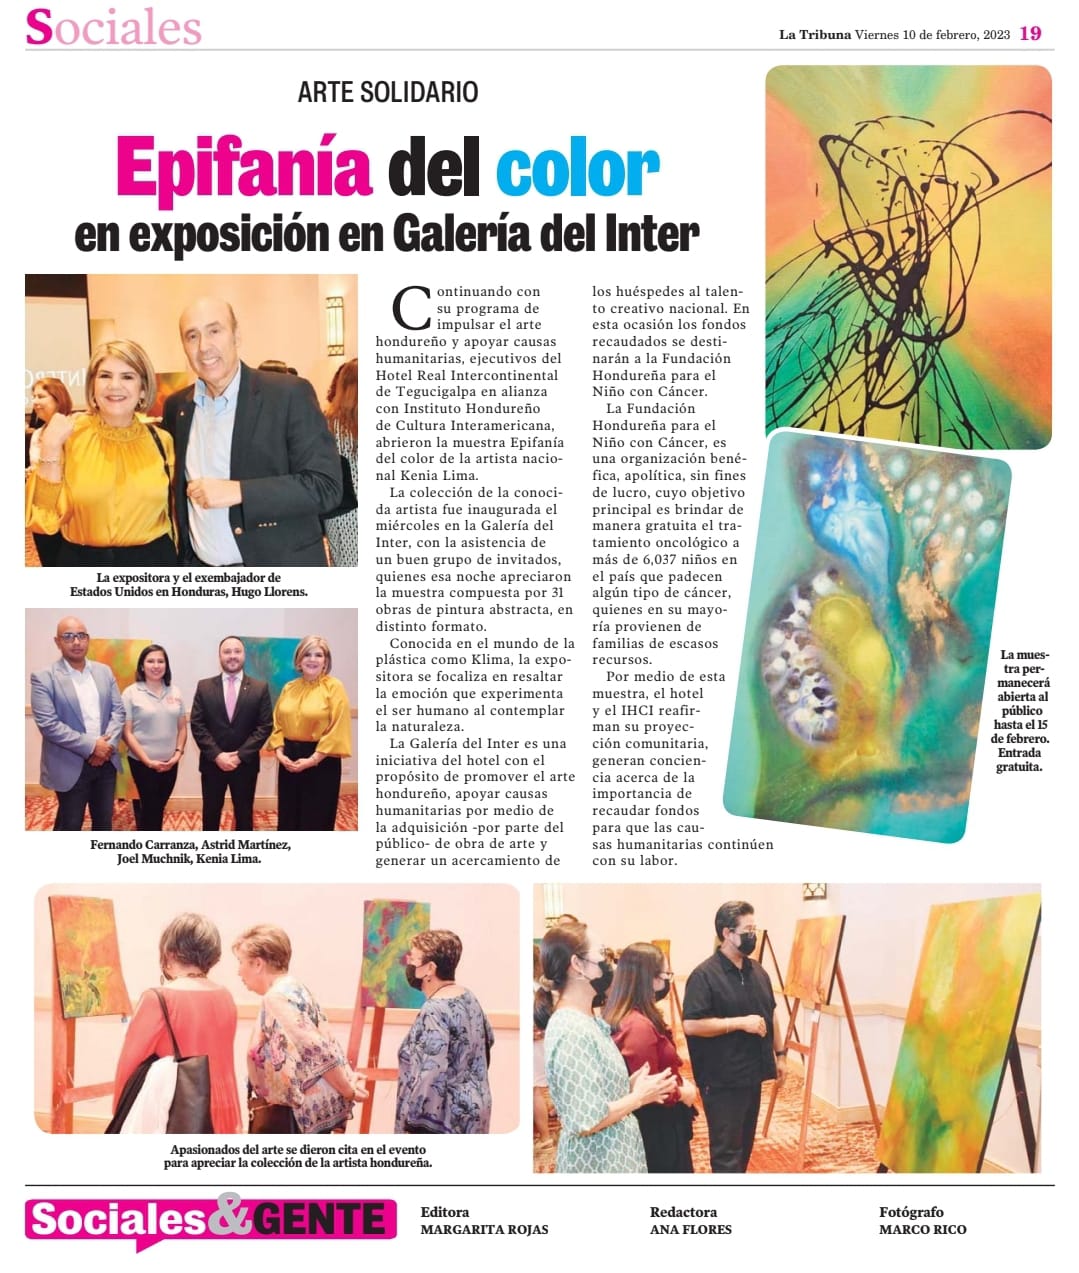 La Tribuna - Epifanía del color en exposición en Galería del Inter